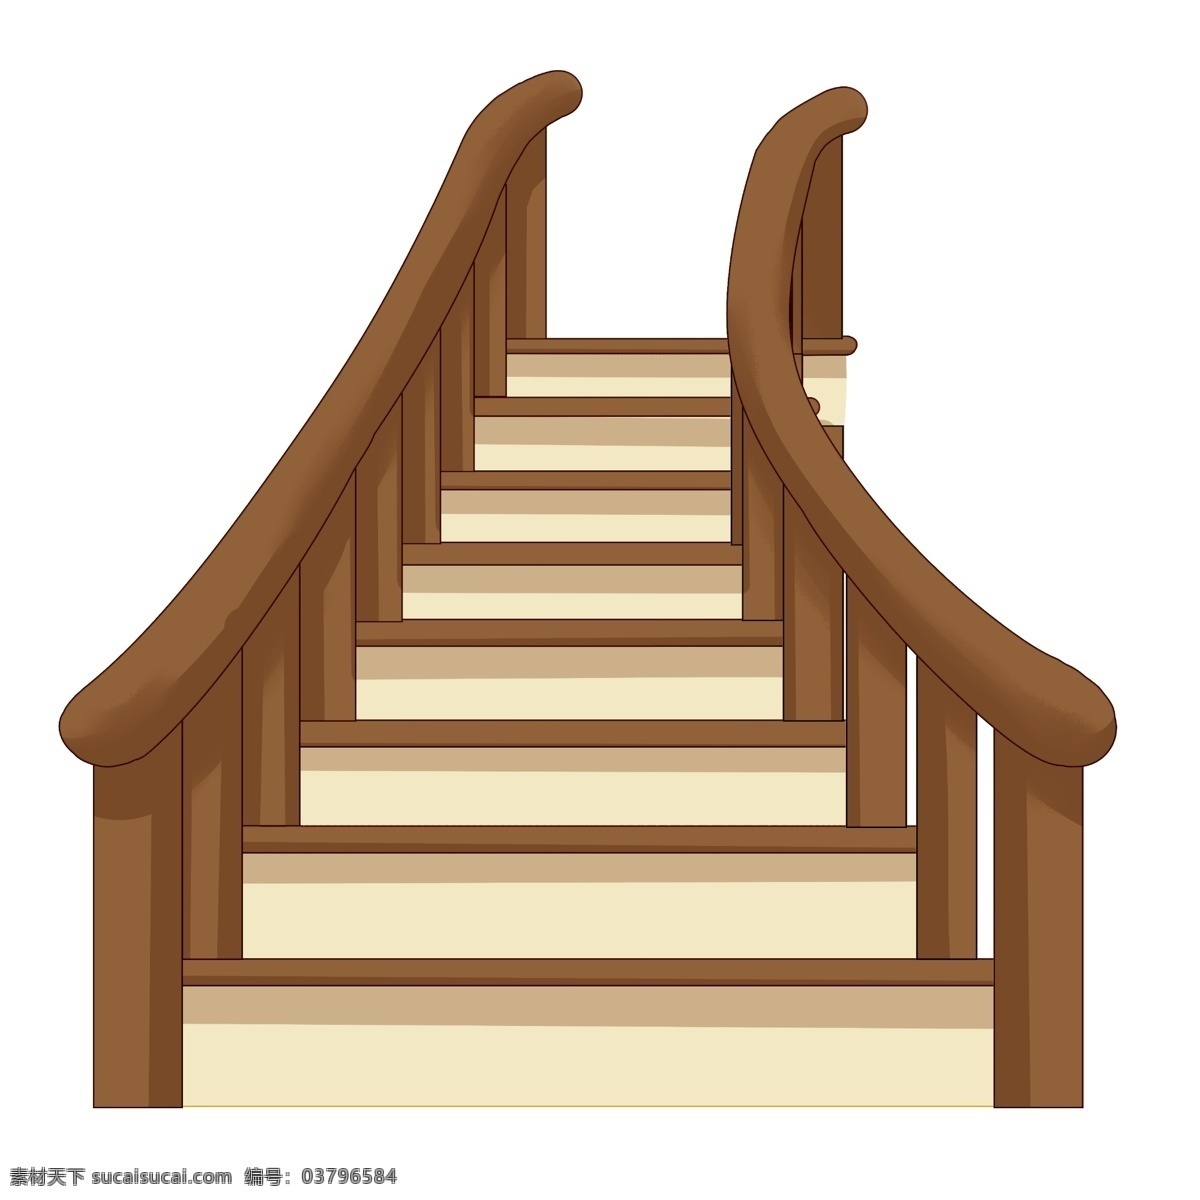 木质 楼梯 阶梯 插画 木质的台阶 楼梯插画 卡通插画 阶梯插画 梯子插画 家具插画 木质的楼梯